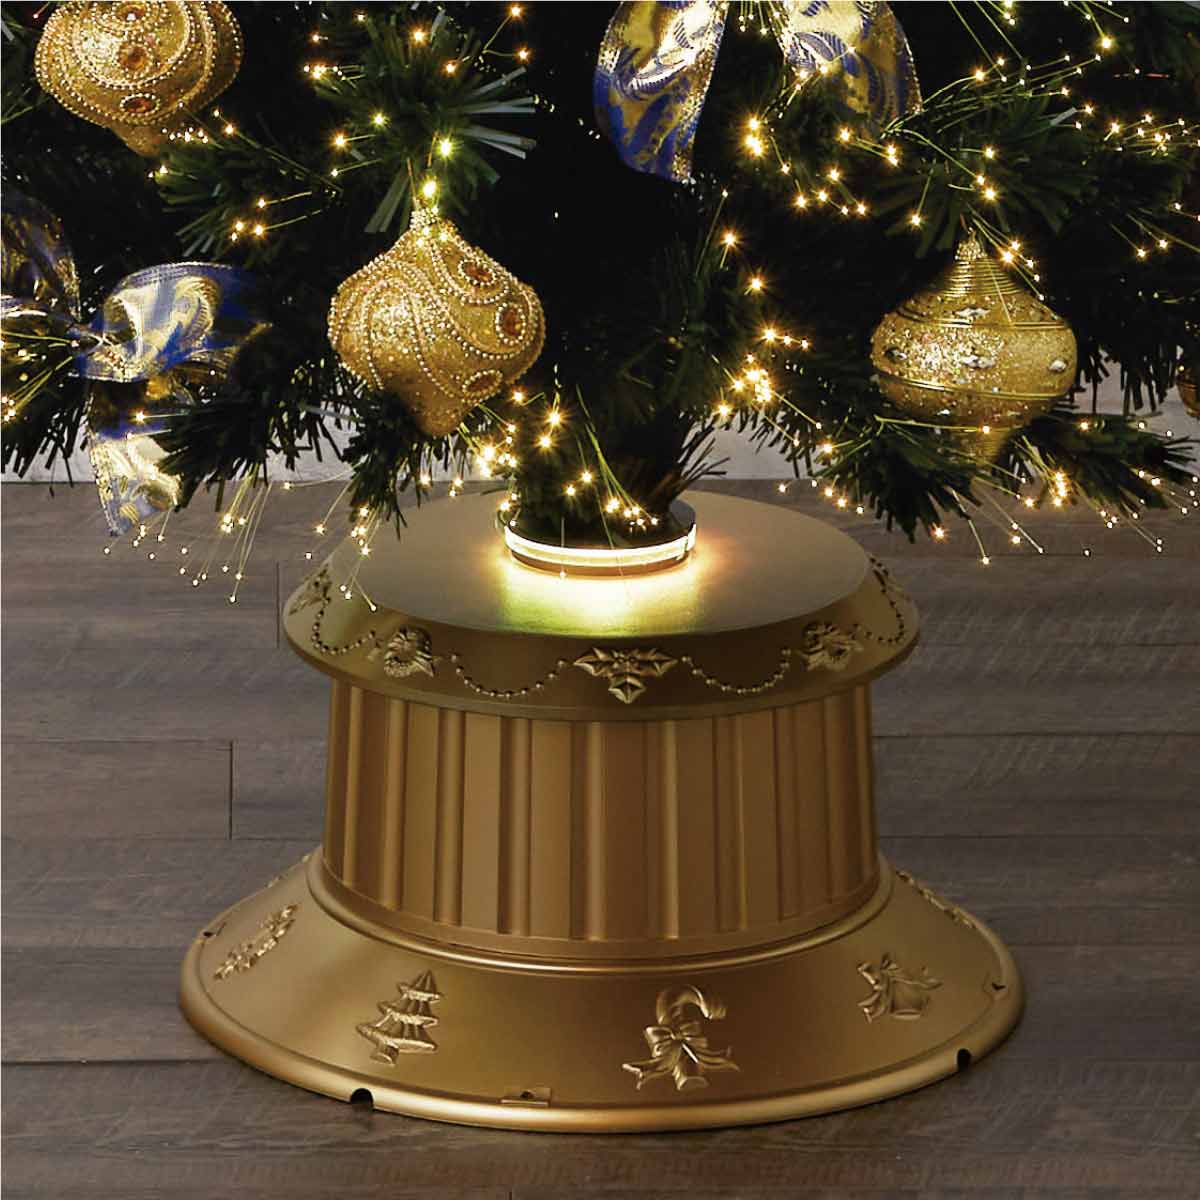 ゴージャスオーナメントファイバークリスマスツリーセット H150xW70cm |クリスマス飾り通販 ストエキ